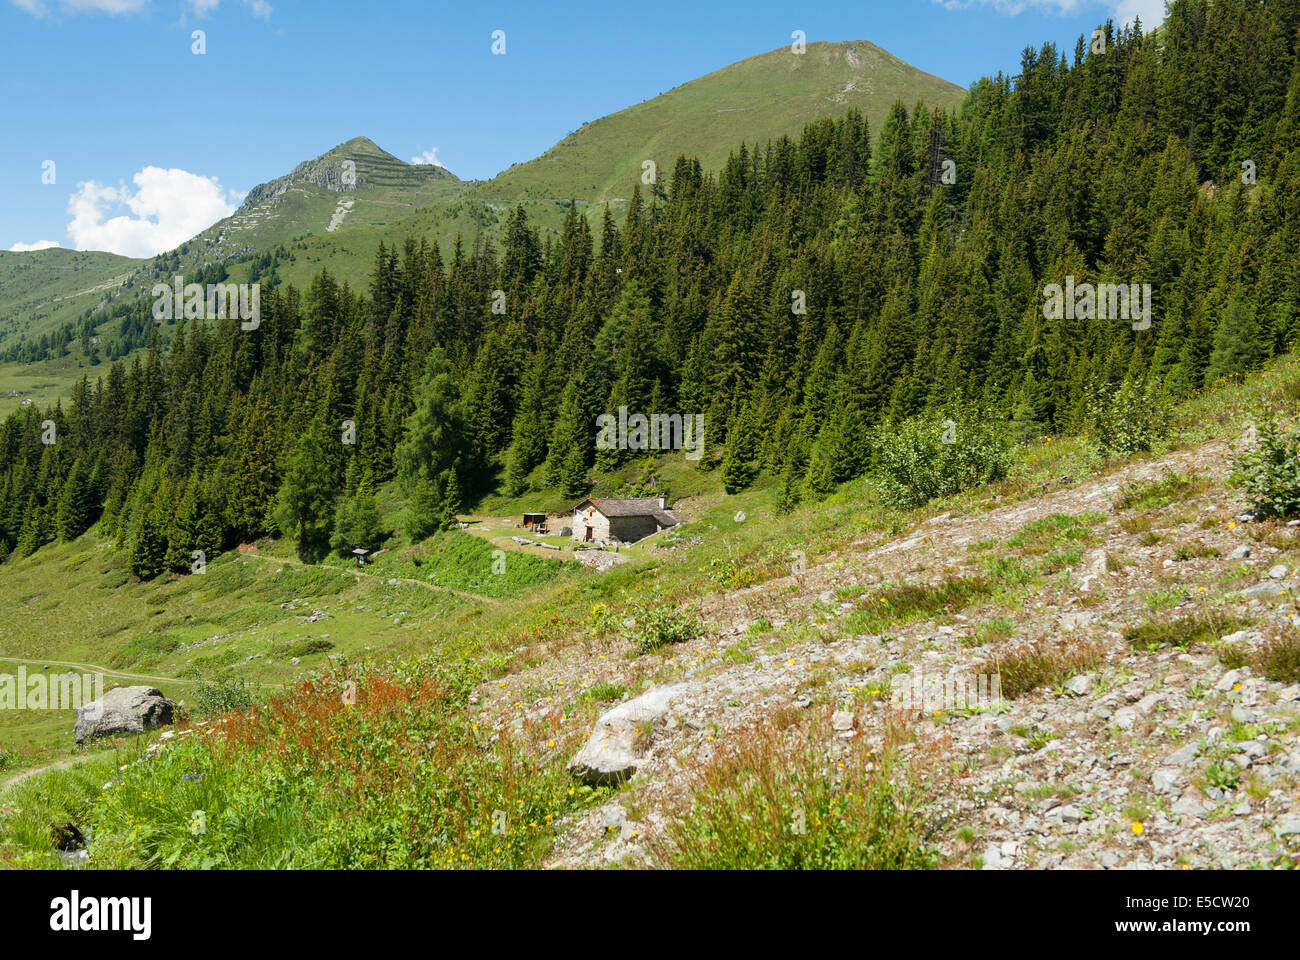 Die Berge von Verbier im Wallis, Schweiz, fallen durch ein ausgedehntes Netz von Wanderwegen zu wandern. Stockfoto